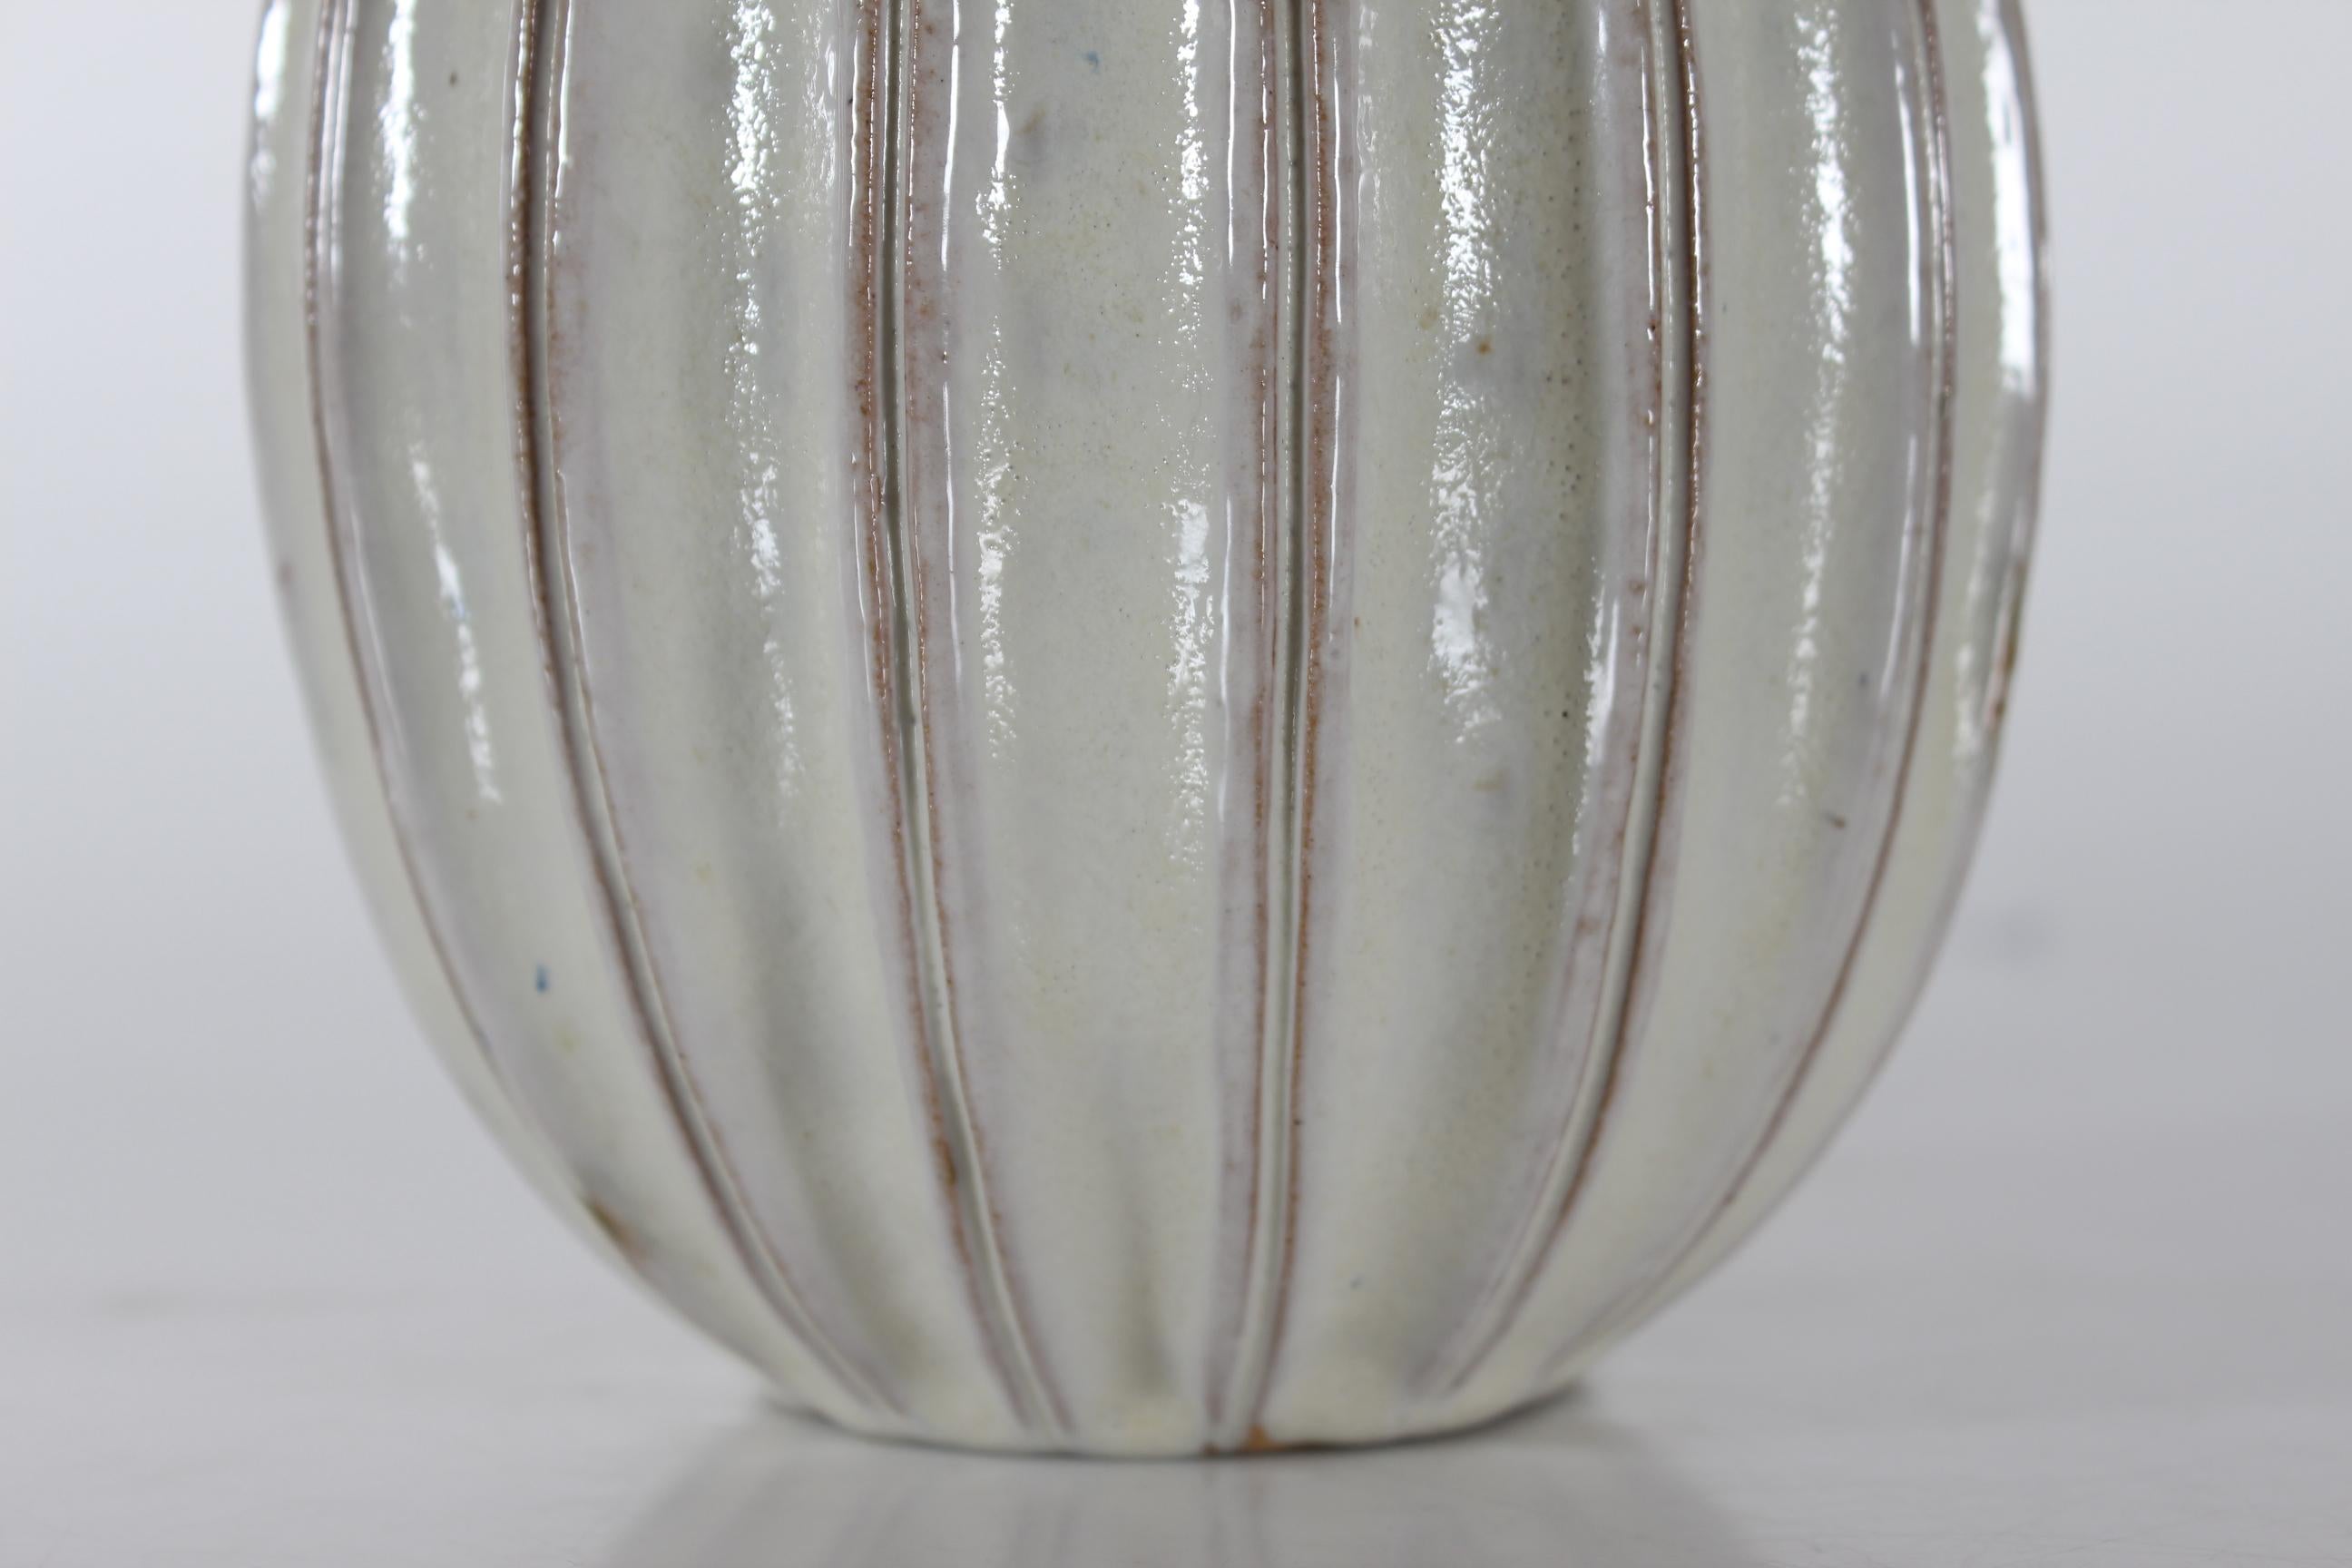 Dänische schlanke, kürbisförmige, geriffelte Tischlampe aus der Mitte des Jahrhunderts von Laurine ceramics in Holbæk, Dänemark. 
Handgefertigt, ca. 1960er Jahre.
Der Lampensockel ist mit einer glänzenden weißen Glasur mit einem zähen